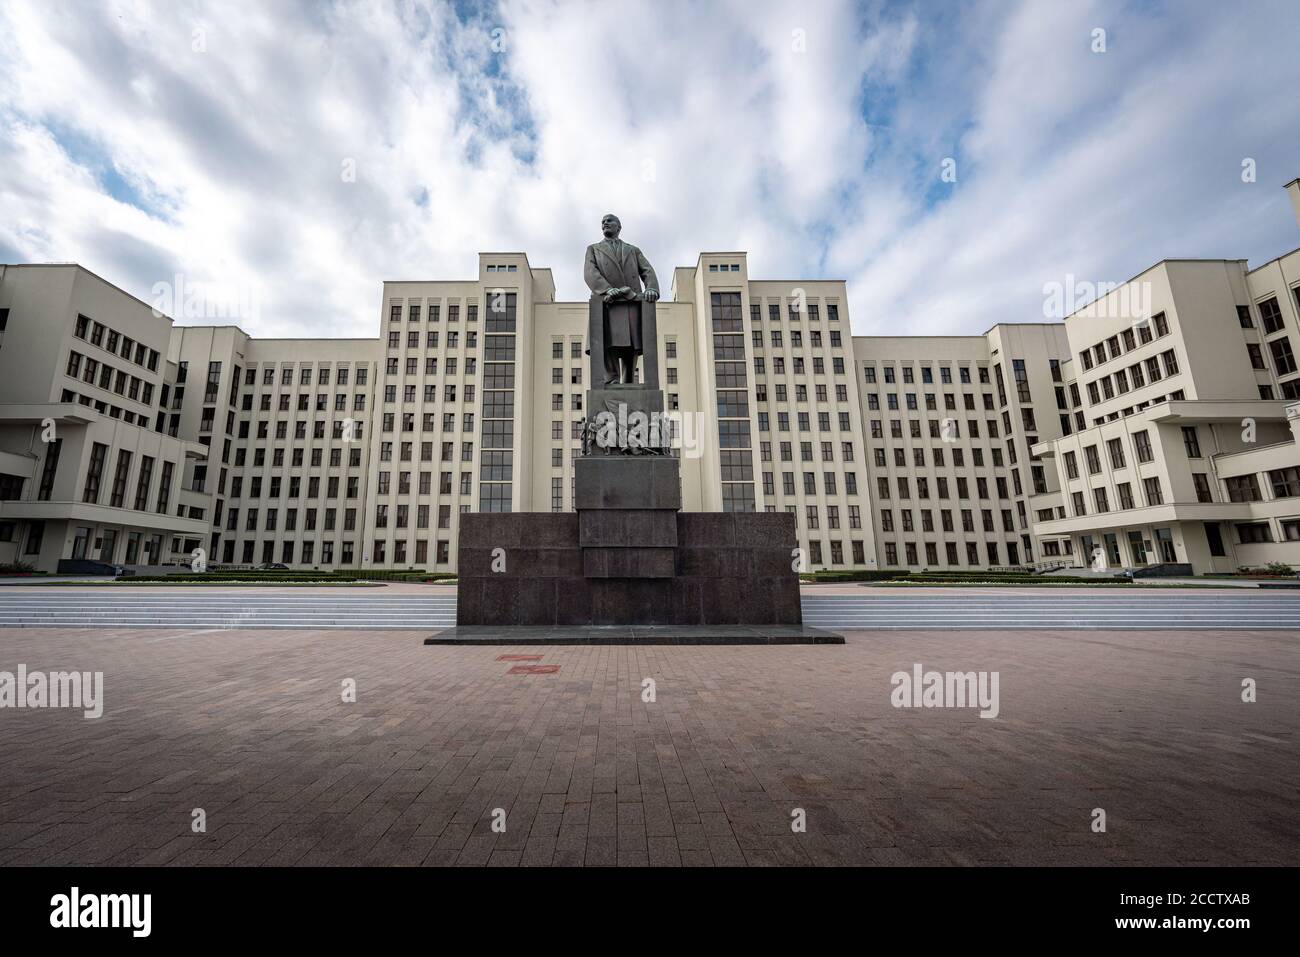 Maison du gouvernement et monument Lénine - Minsk, Bélarus Banque D'Images